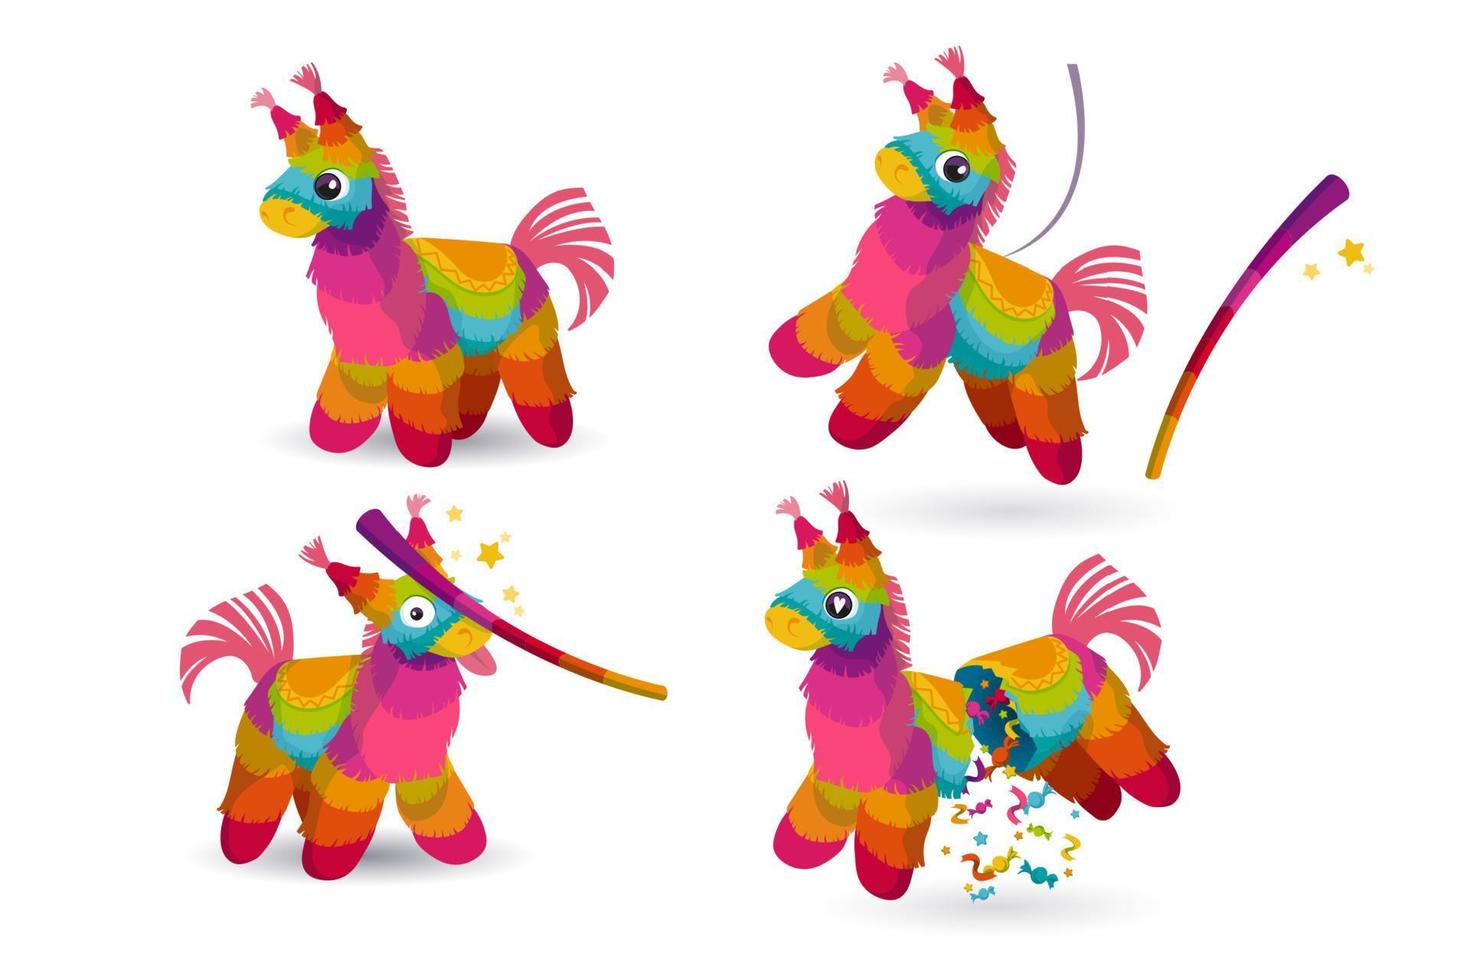 Regenbogen-Piñata für Geburtstagsfeier, mexikanischer Feiertag vektor